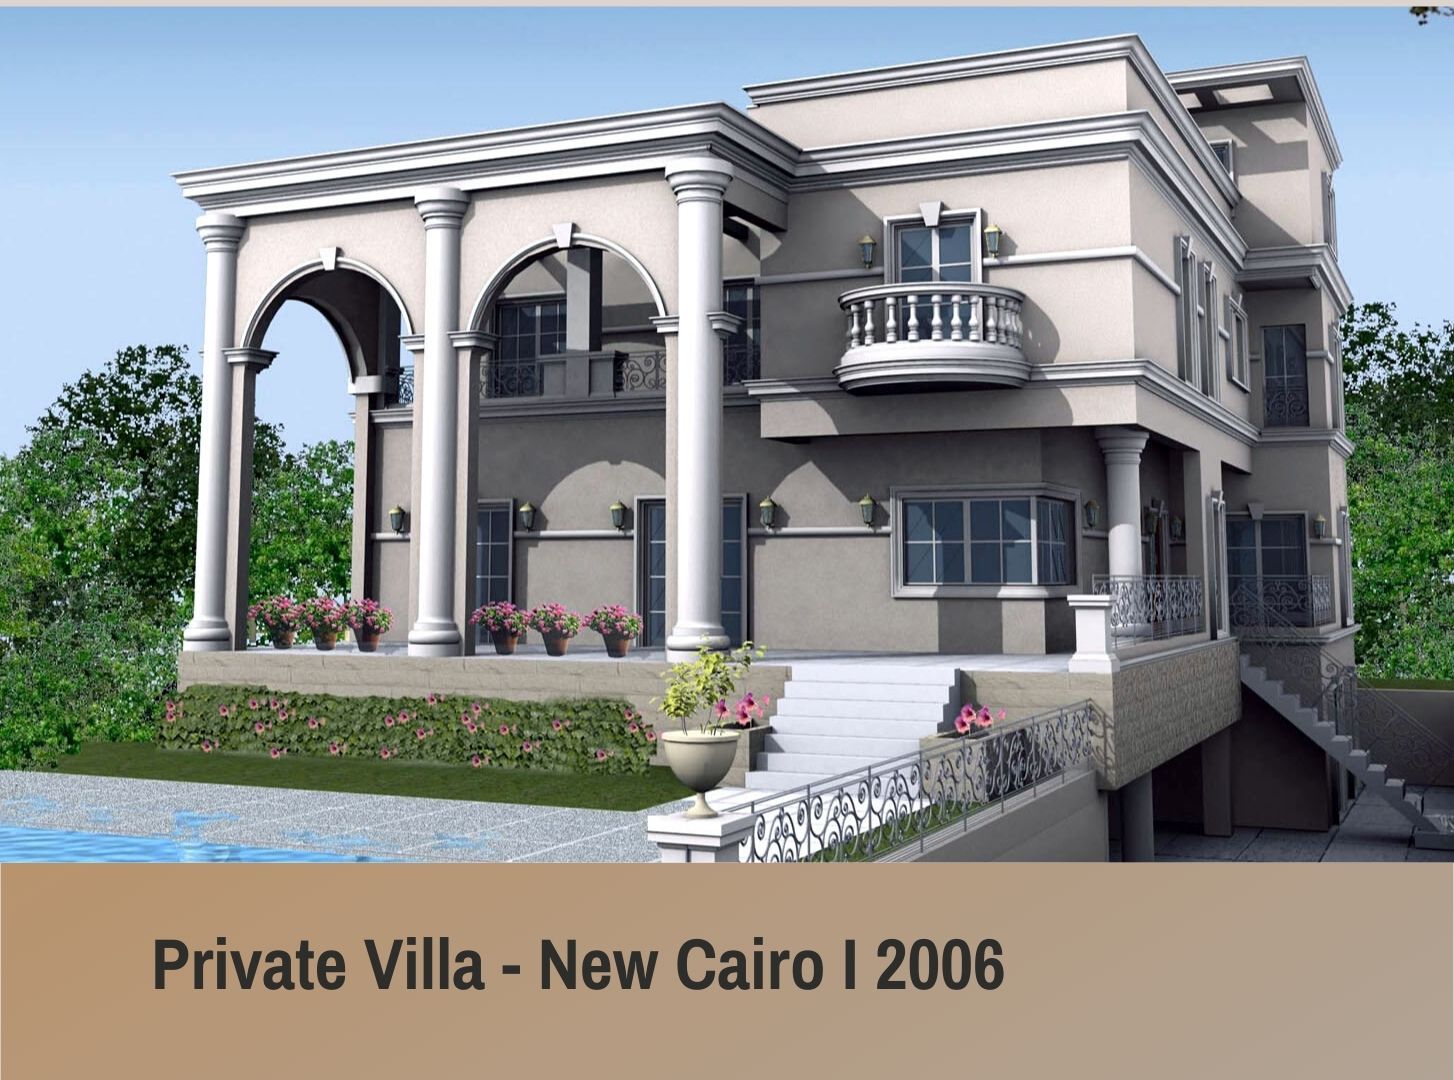 Private Villa